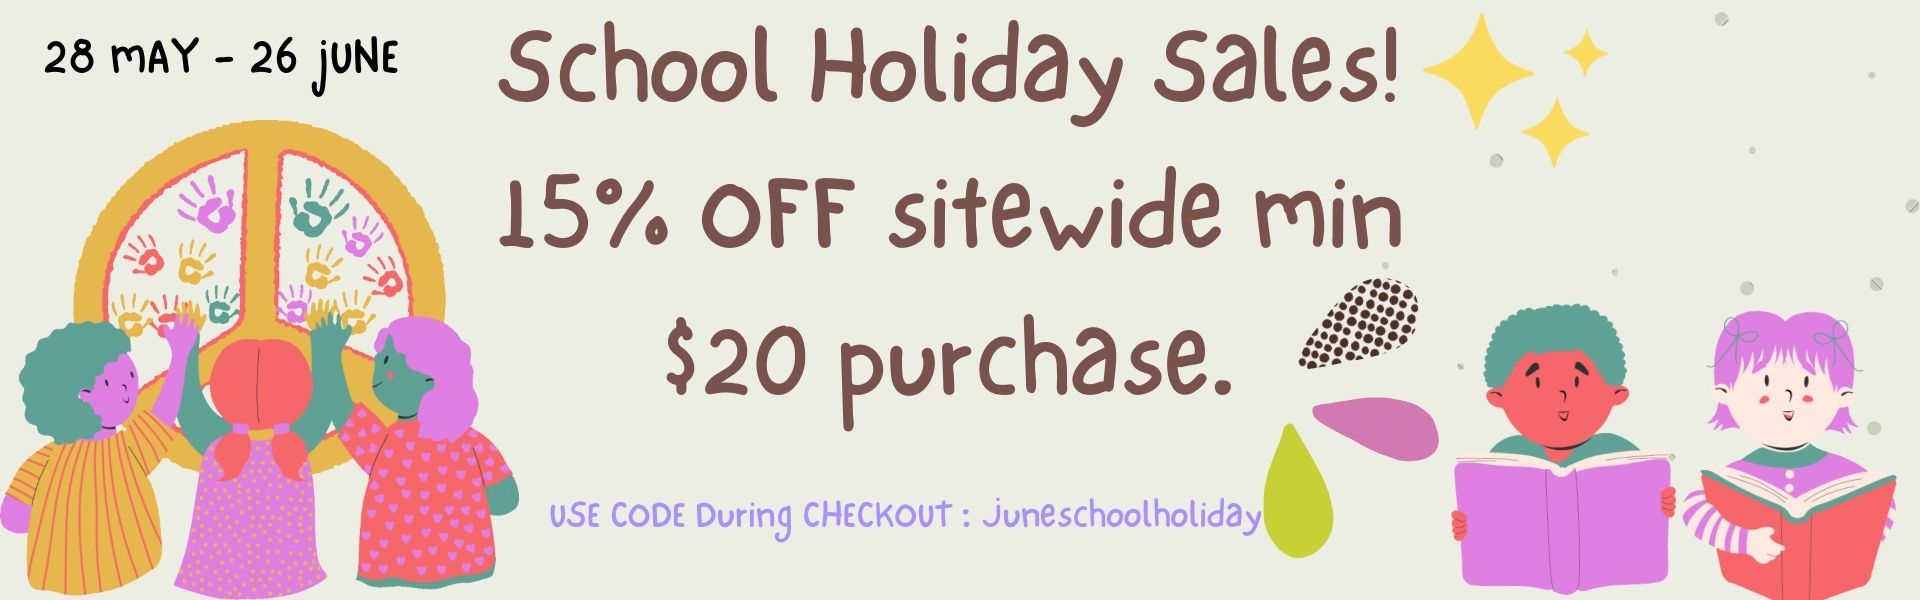 School Holiday sales